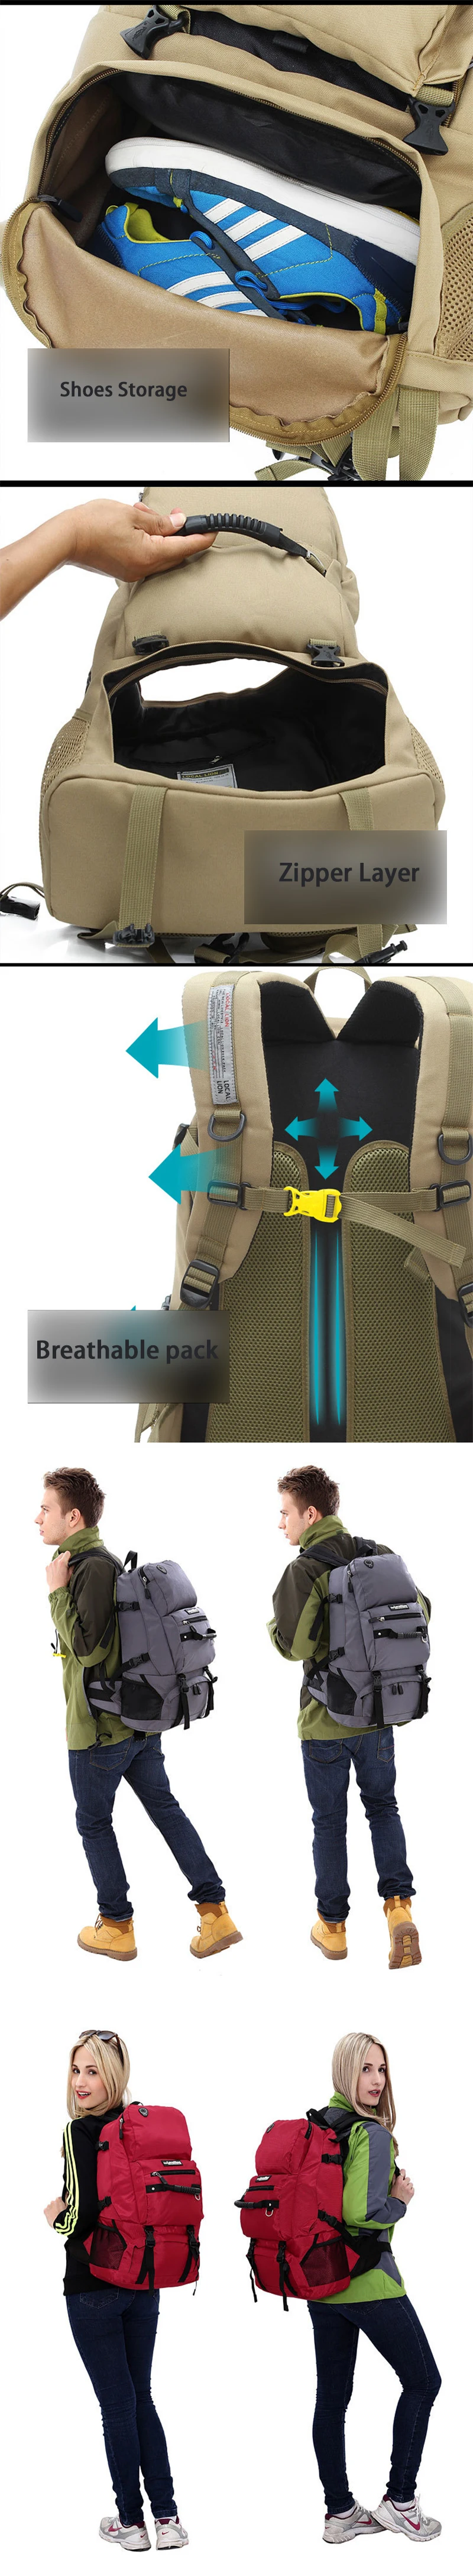 45L походный рюкзак, рюкзак для альпинизма, камуфляж, тактический военный рюкзак, туристический рюкзак для путешествий, лыжный рюкзак